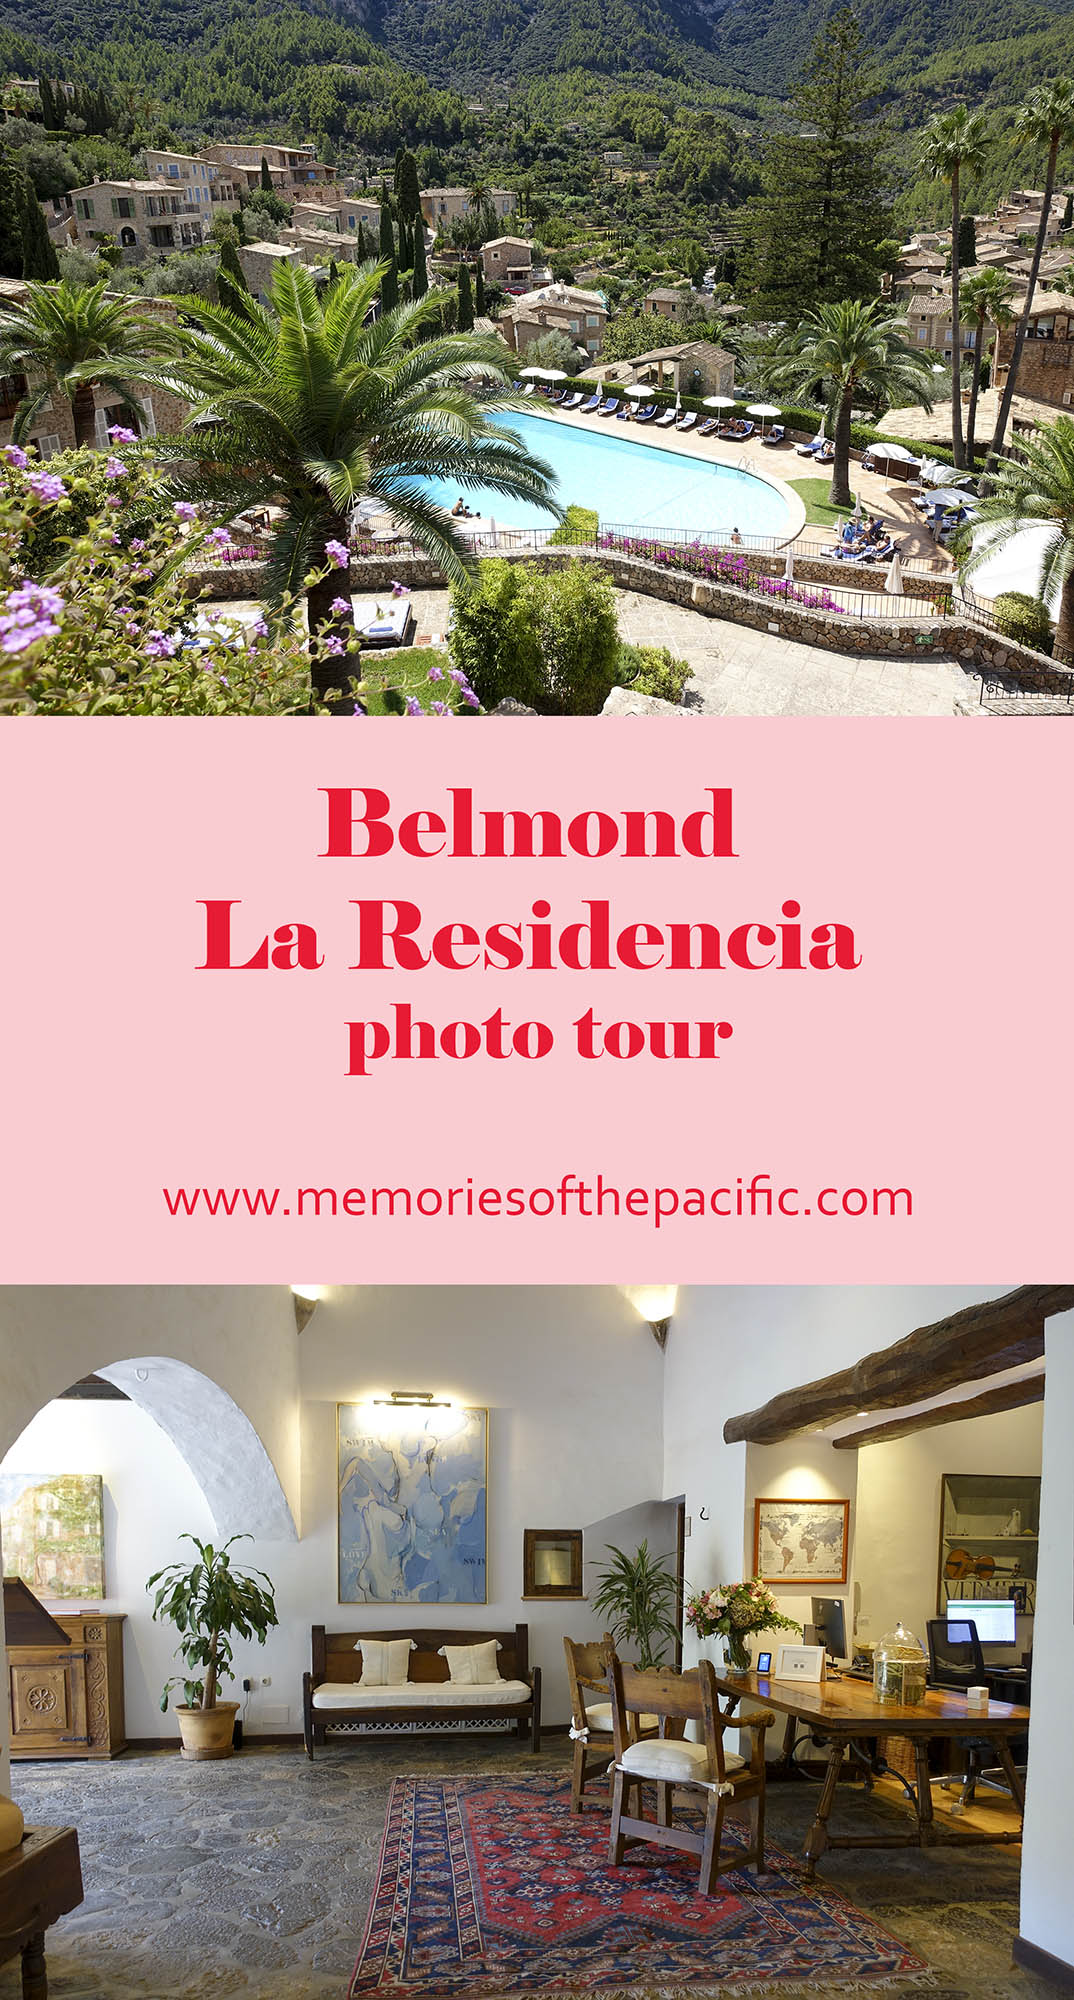 Belmond La Residencia Photo tour